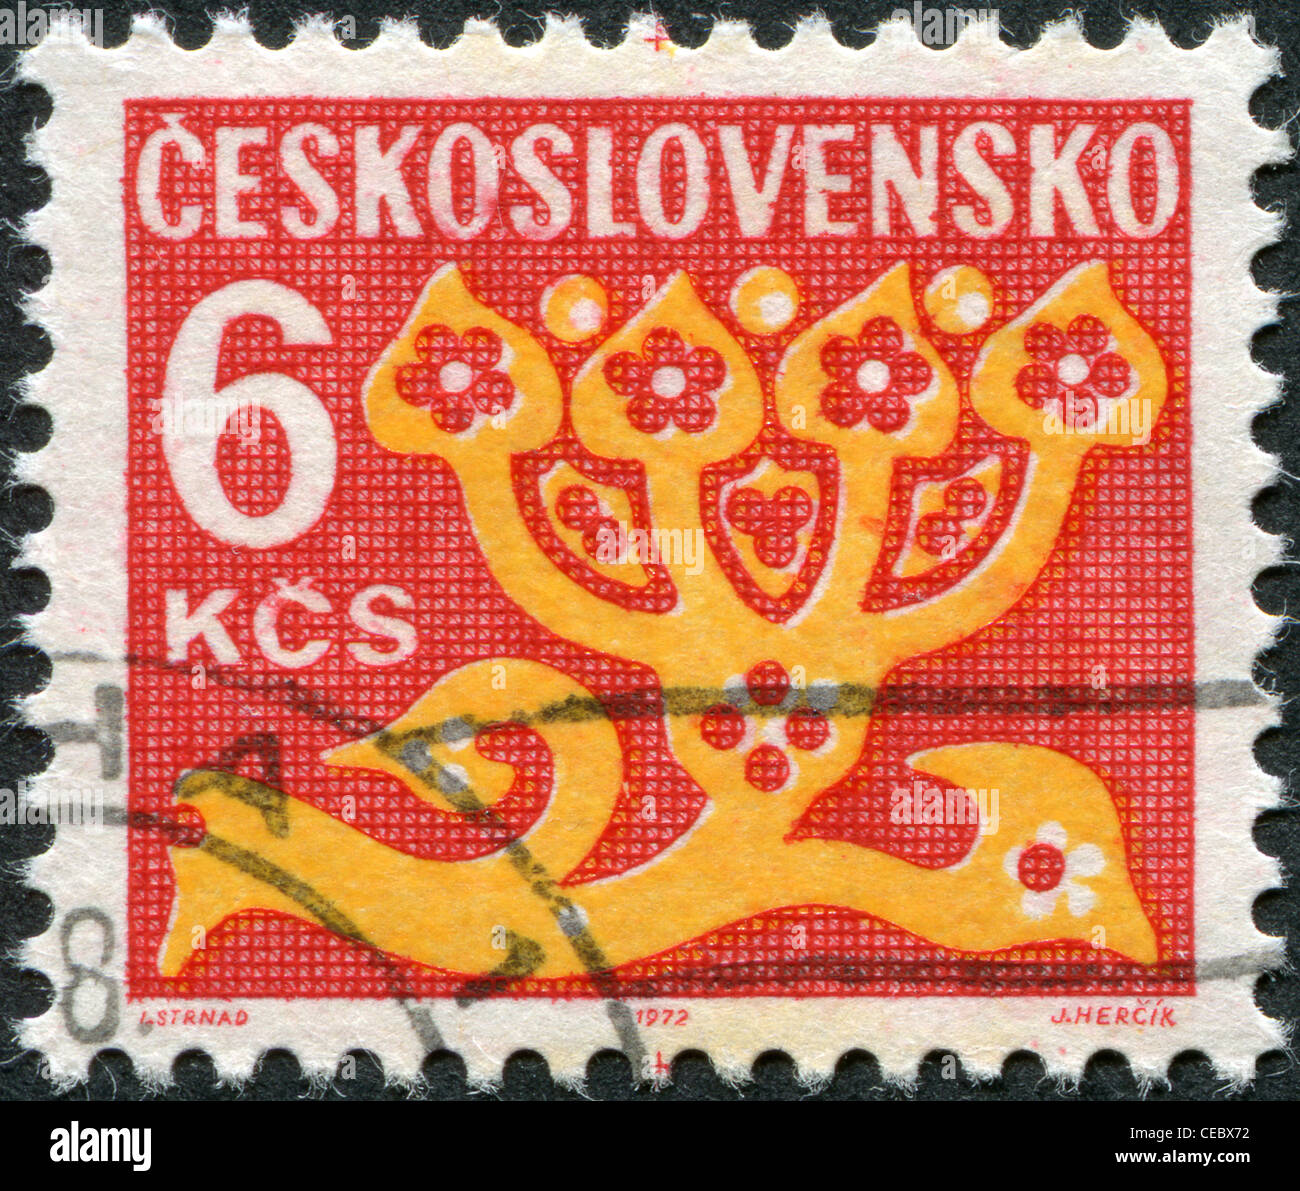 Tschechoslowakei - ca. 1972: Eine Briefmarke gedruckt in der Tschechoslowakei, stilisierte Blume, ca. 1972 gezeigt Stockfoto